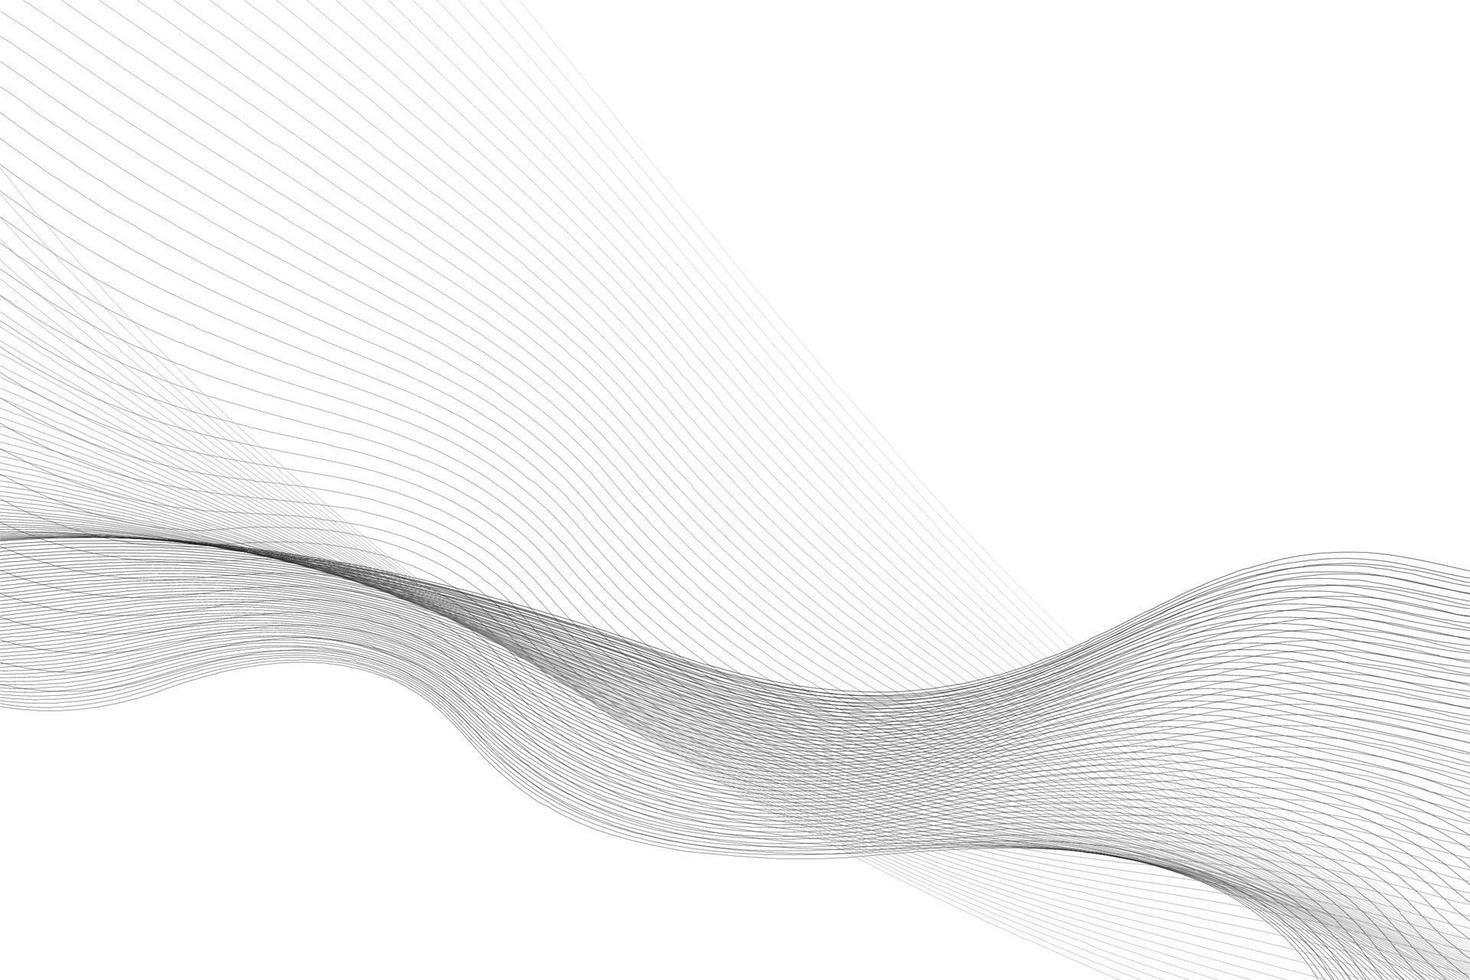 cor branca e cinza abstrata, fundo de listras de design moderno com elemento de onda. ilustração vetorial. vetor